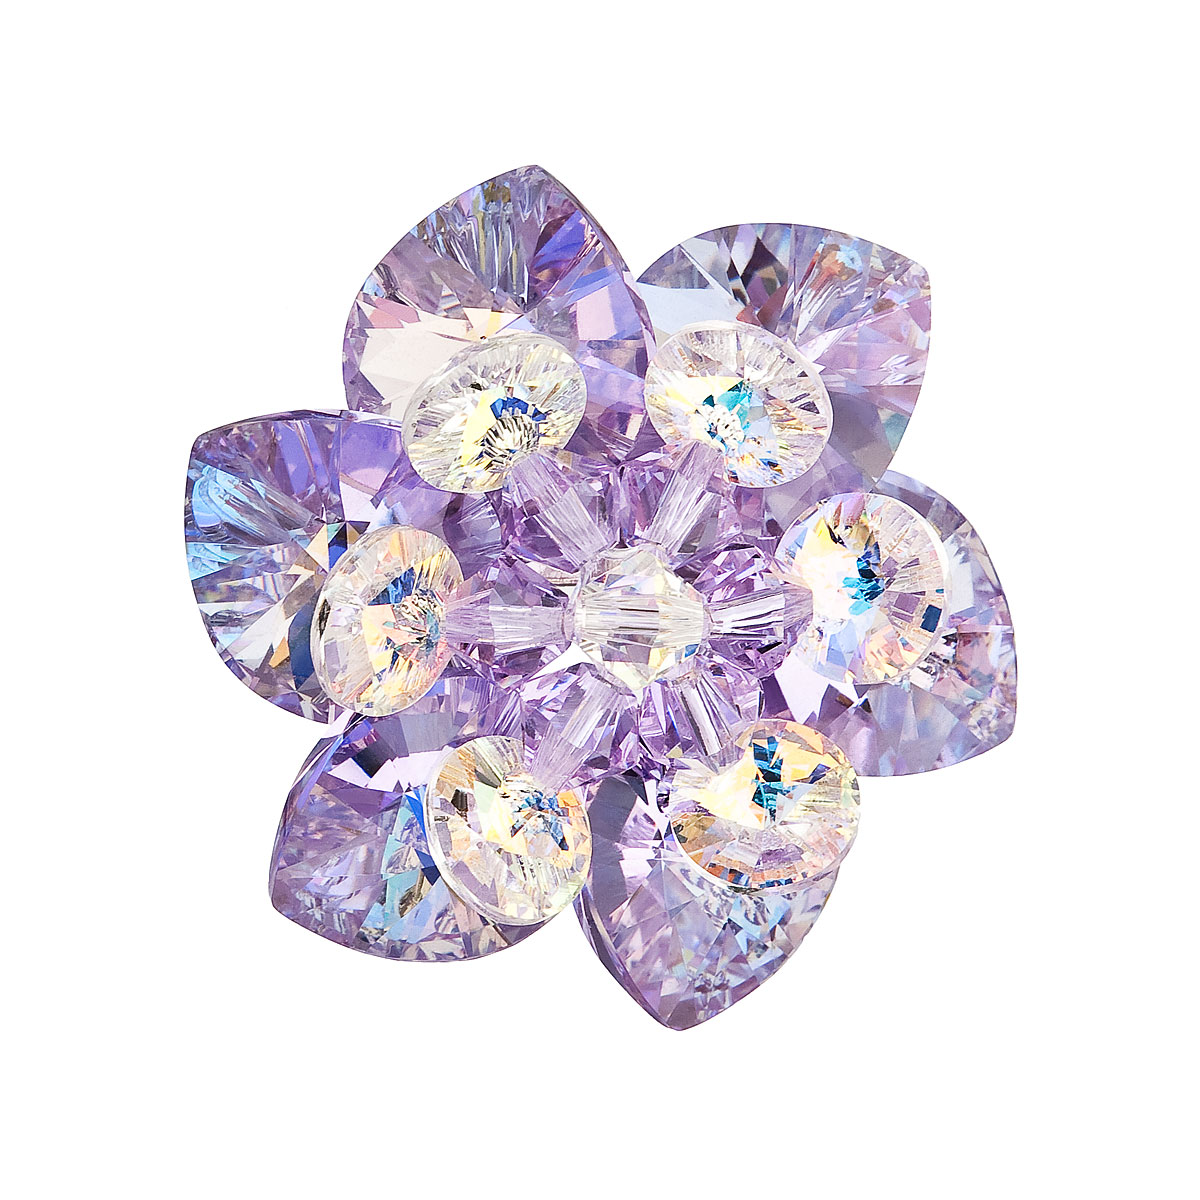 Brož bižuterie se Swarovski krystaly fialová kytička 78001.3